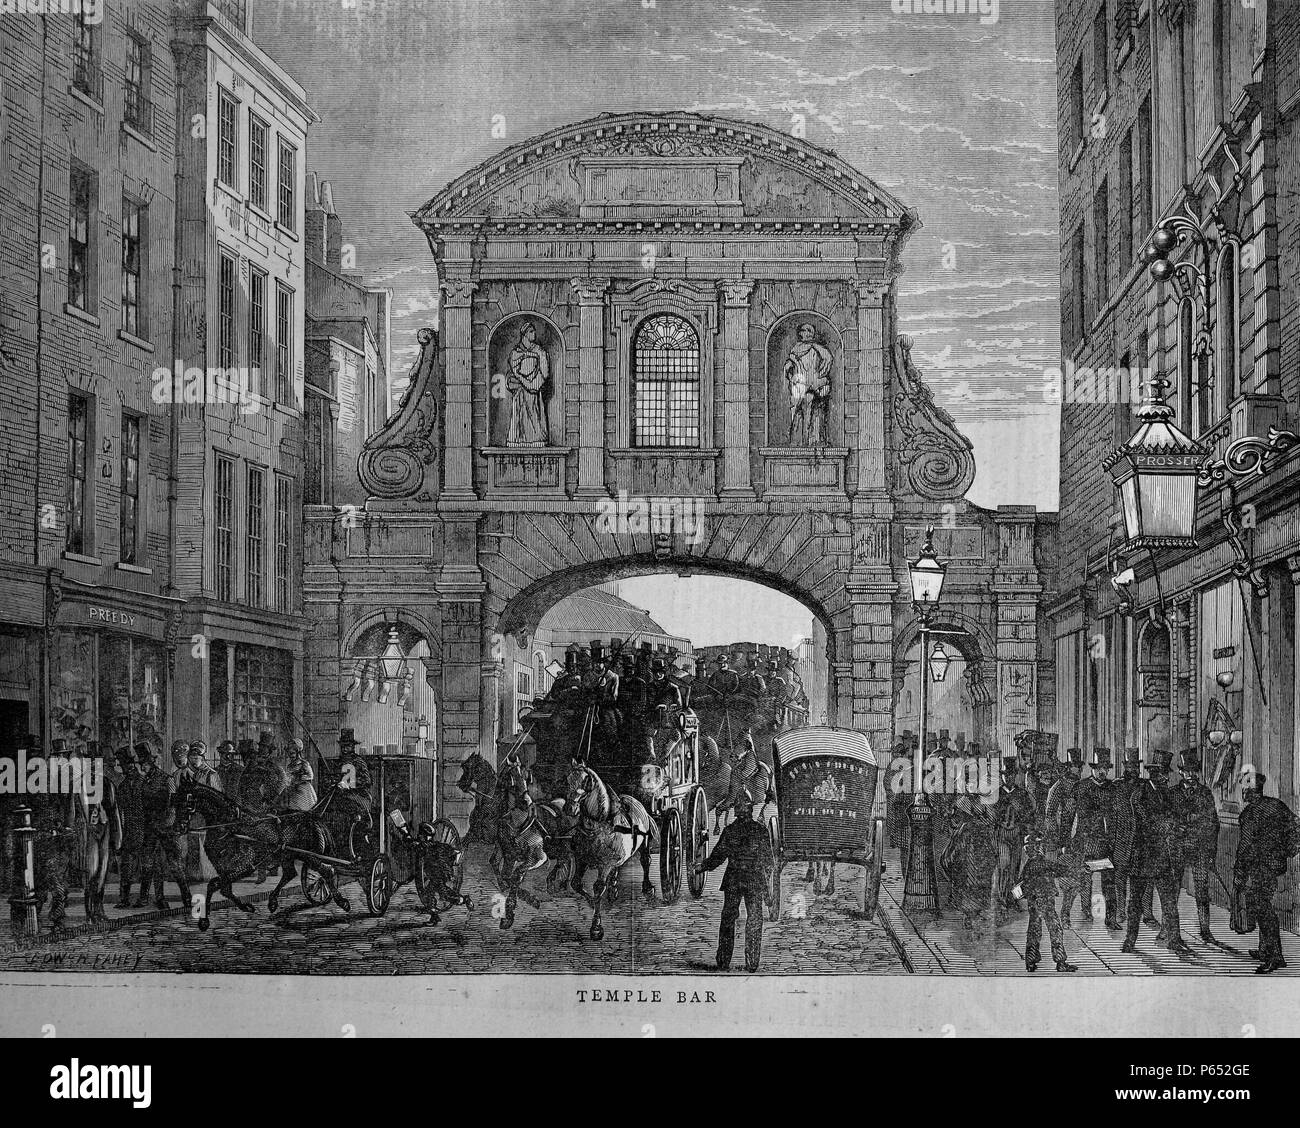 Incisione di Wren's Temple Bar porta. Commissionato da re Carlo II e progettato da Sir Christopher Wren, l' ammenda arco di pietra di Portland è stato costruito tra il 1669 e il 1672. Datata 1870 Foto Stock